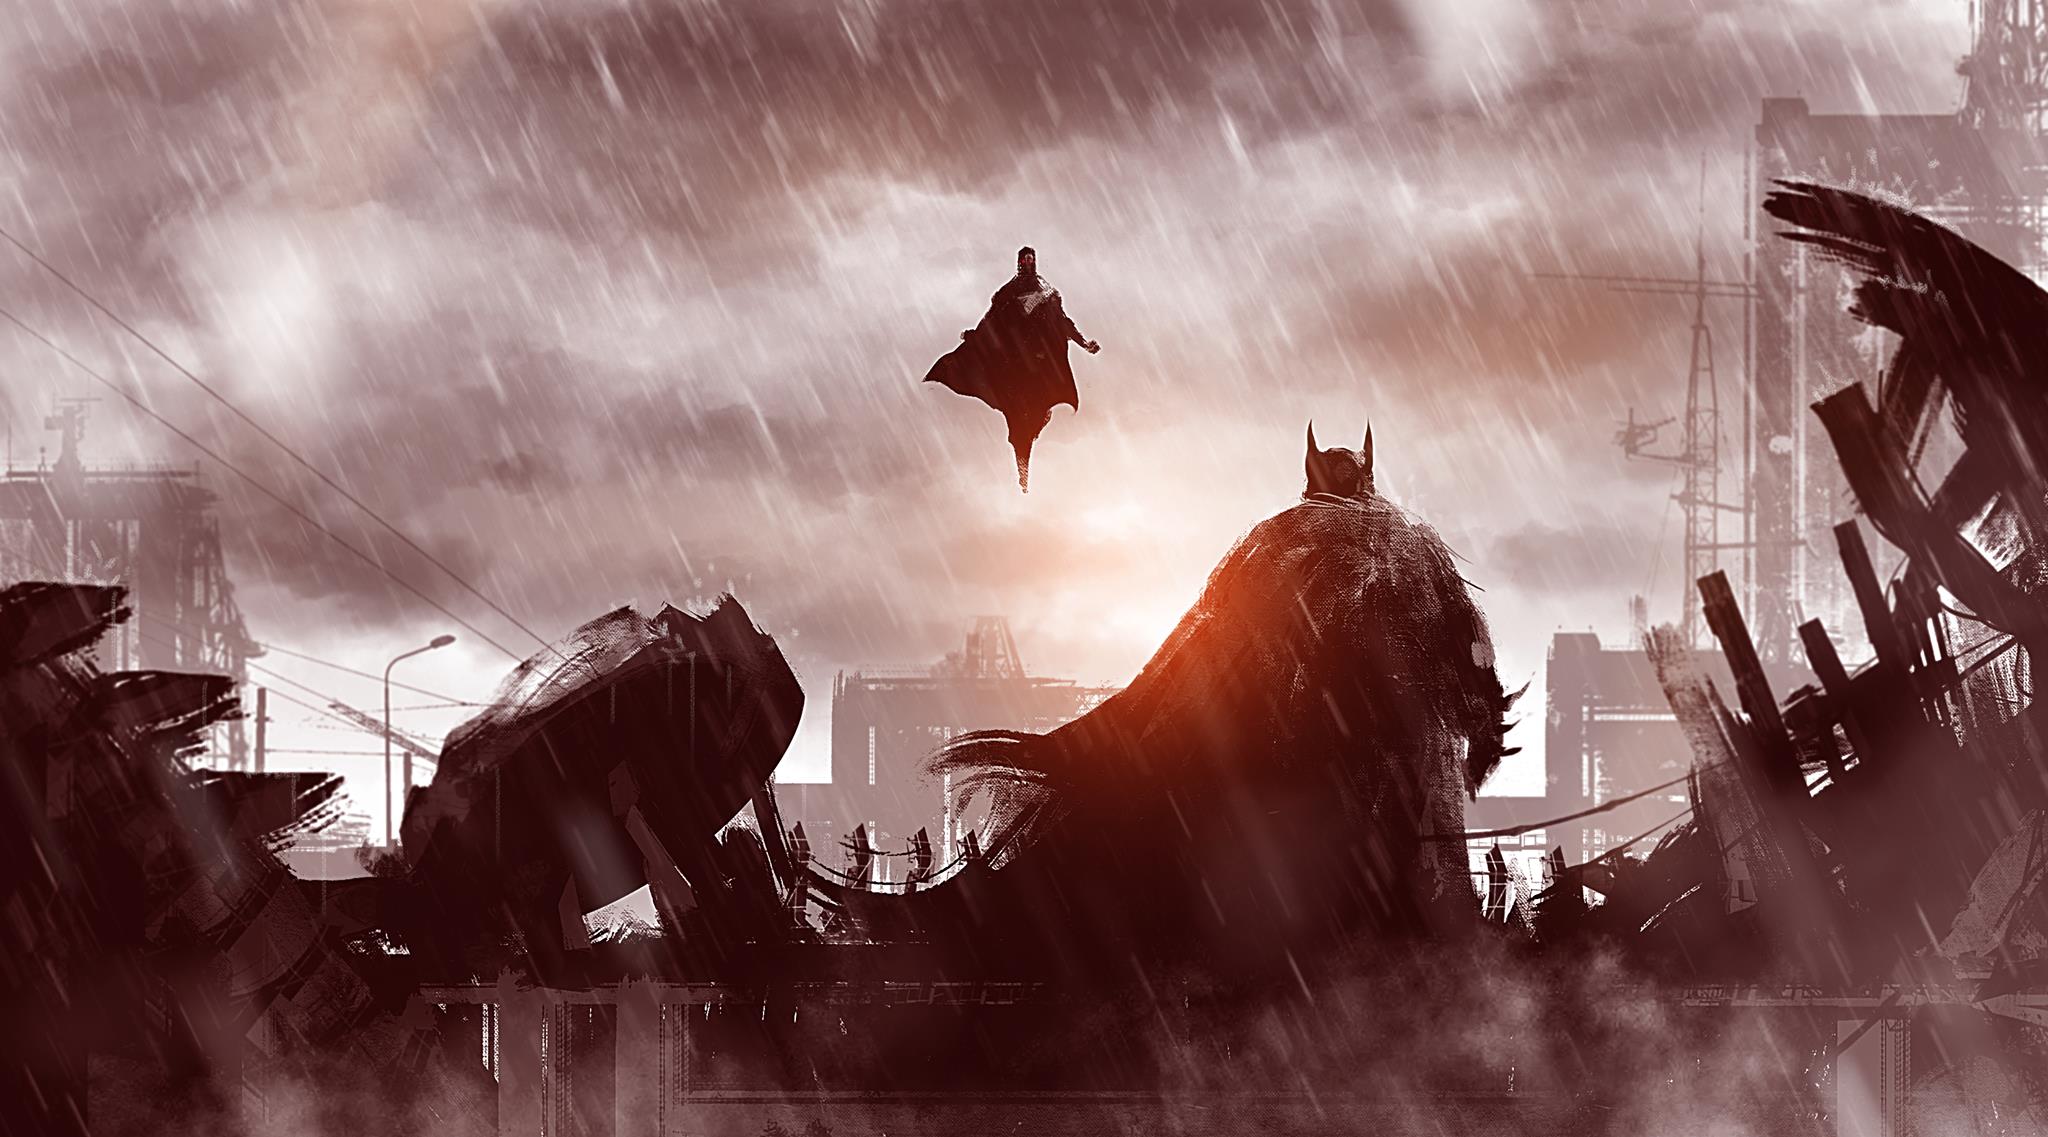 batman vs superman fond d'écran 4k,illustration,oeuvre de cg,compositing numérique,capture d'écran,personnage fictif